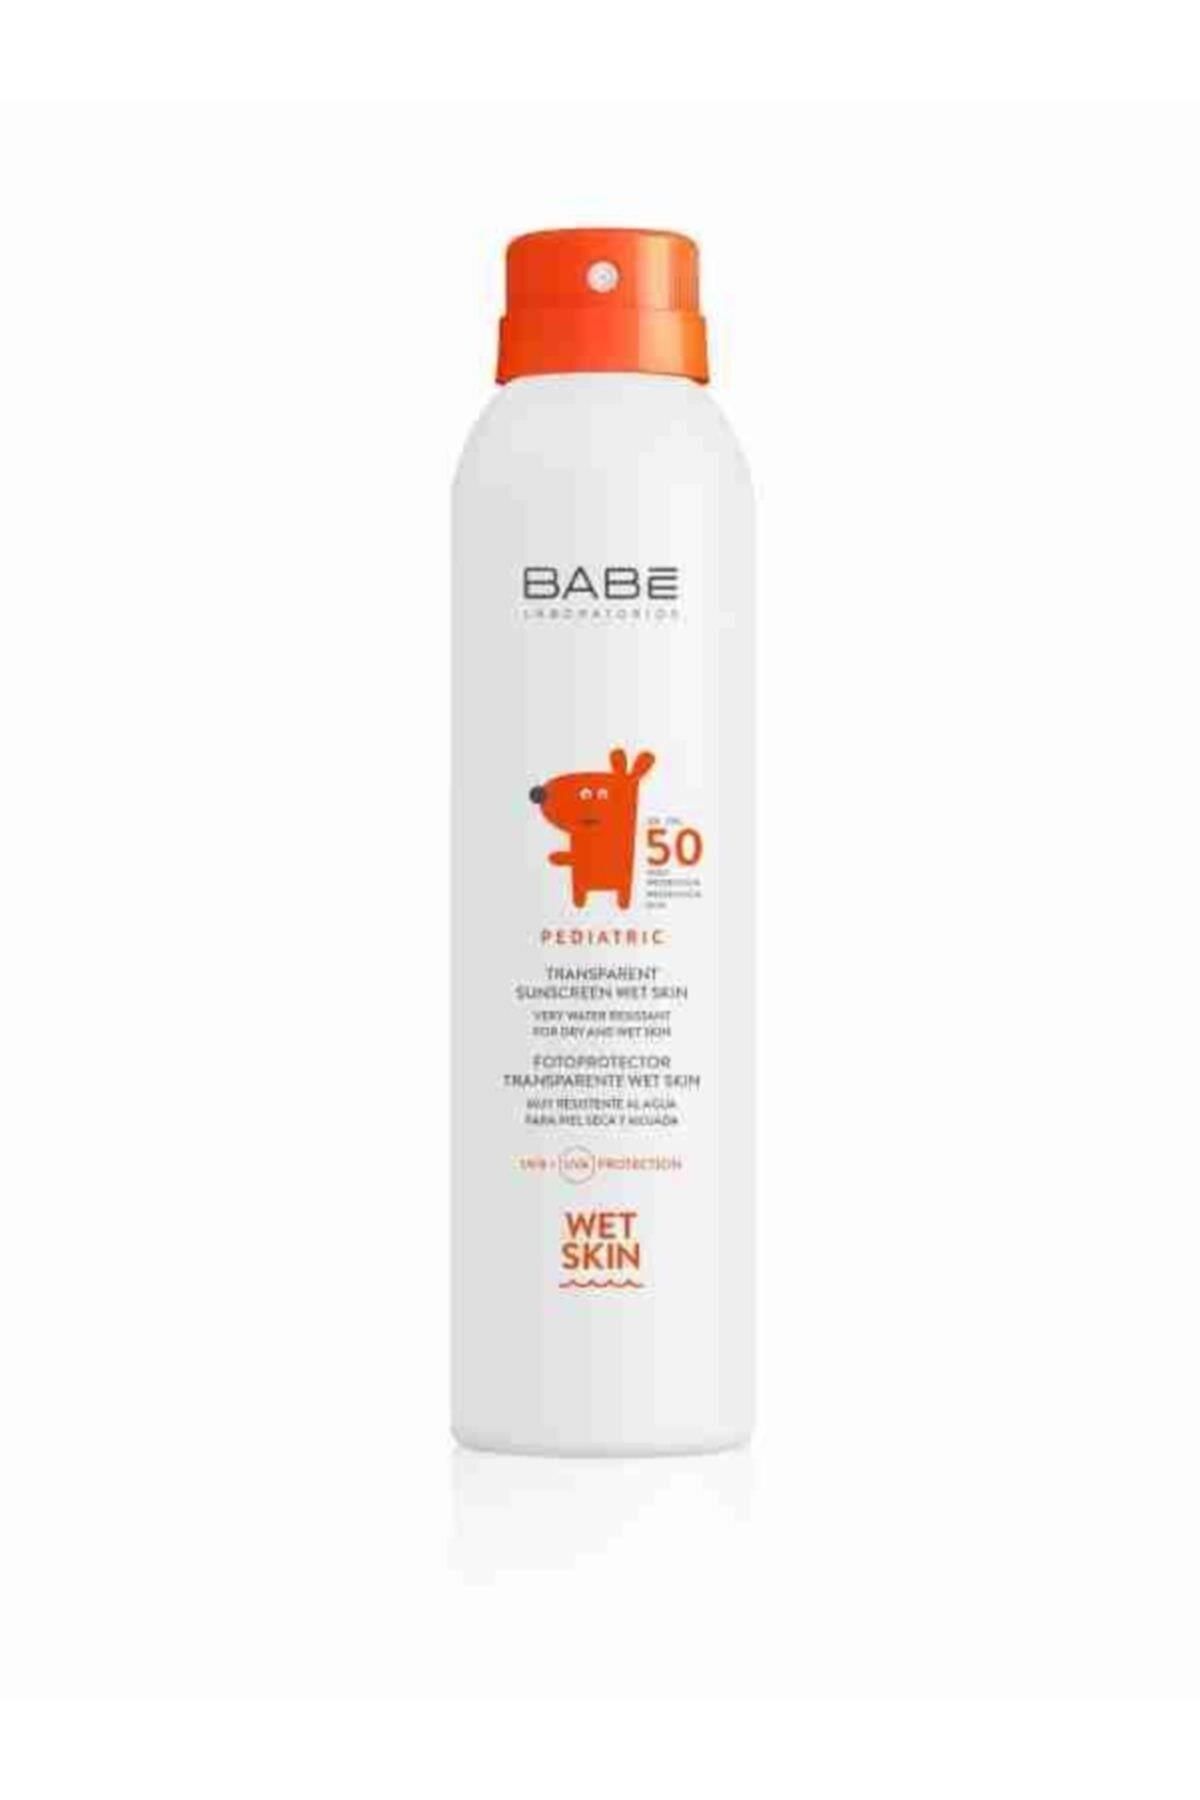 Babe Laboratorios Babe Pediatric Transparent Sunscreen Wet Skin Spf 50 Bebek Ve Çocuk Için Güneş Spreyi 200 ml